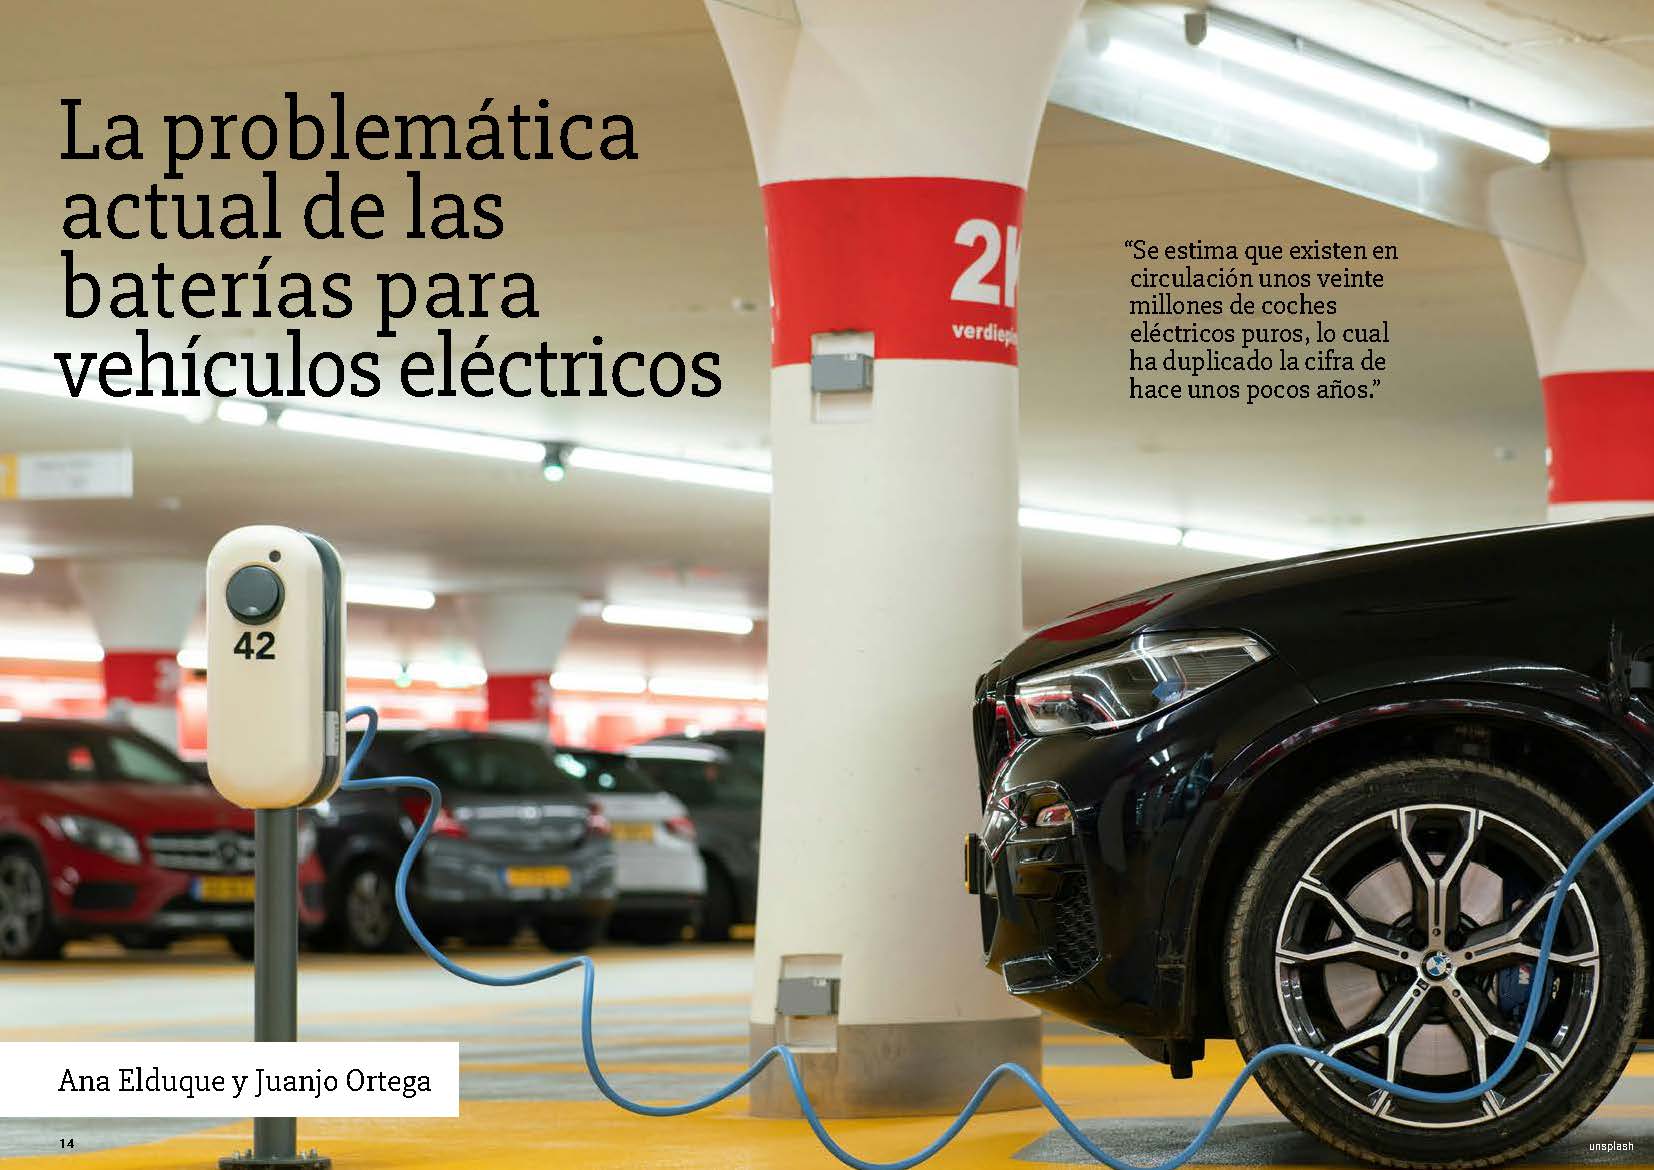 La problemática actual de las baterías para vehículos eléctricos